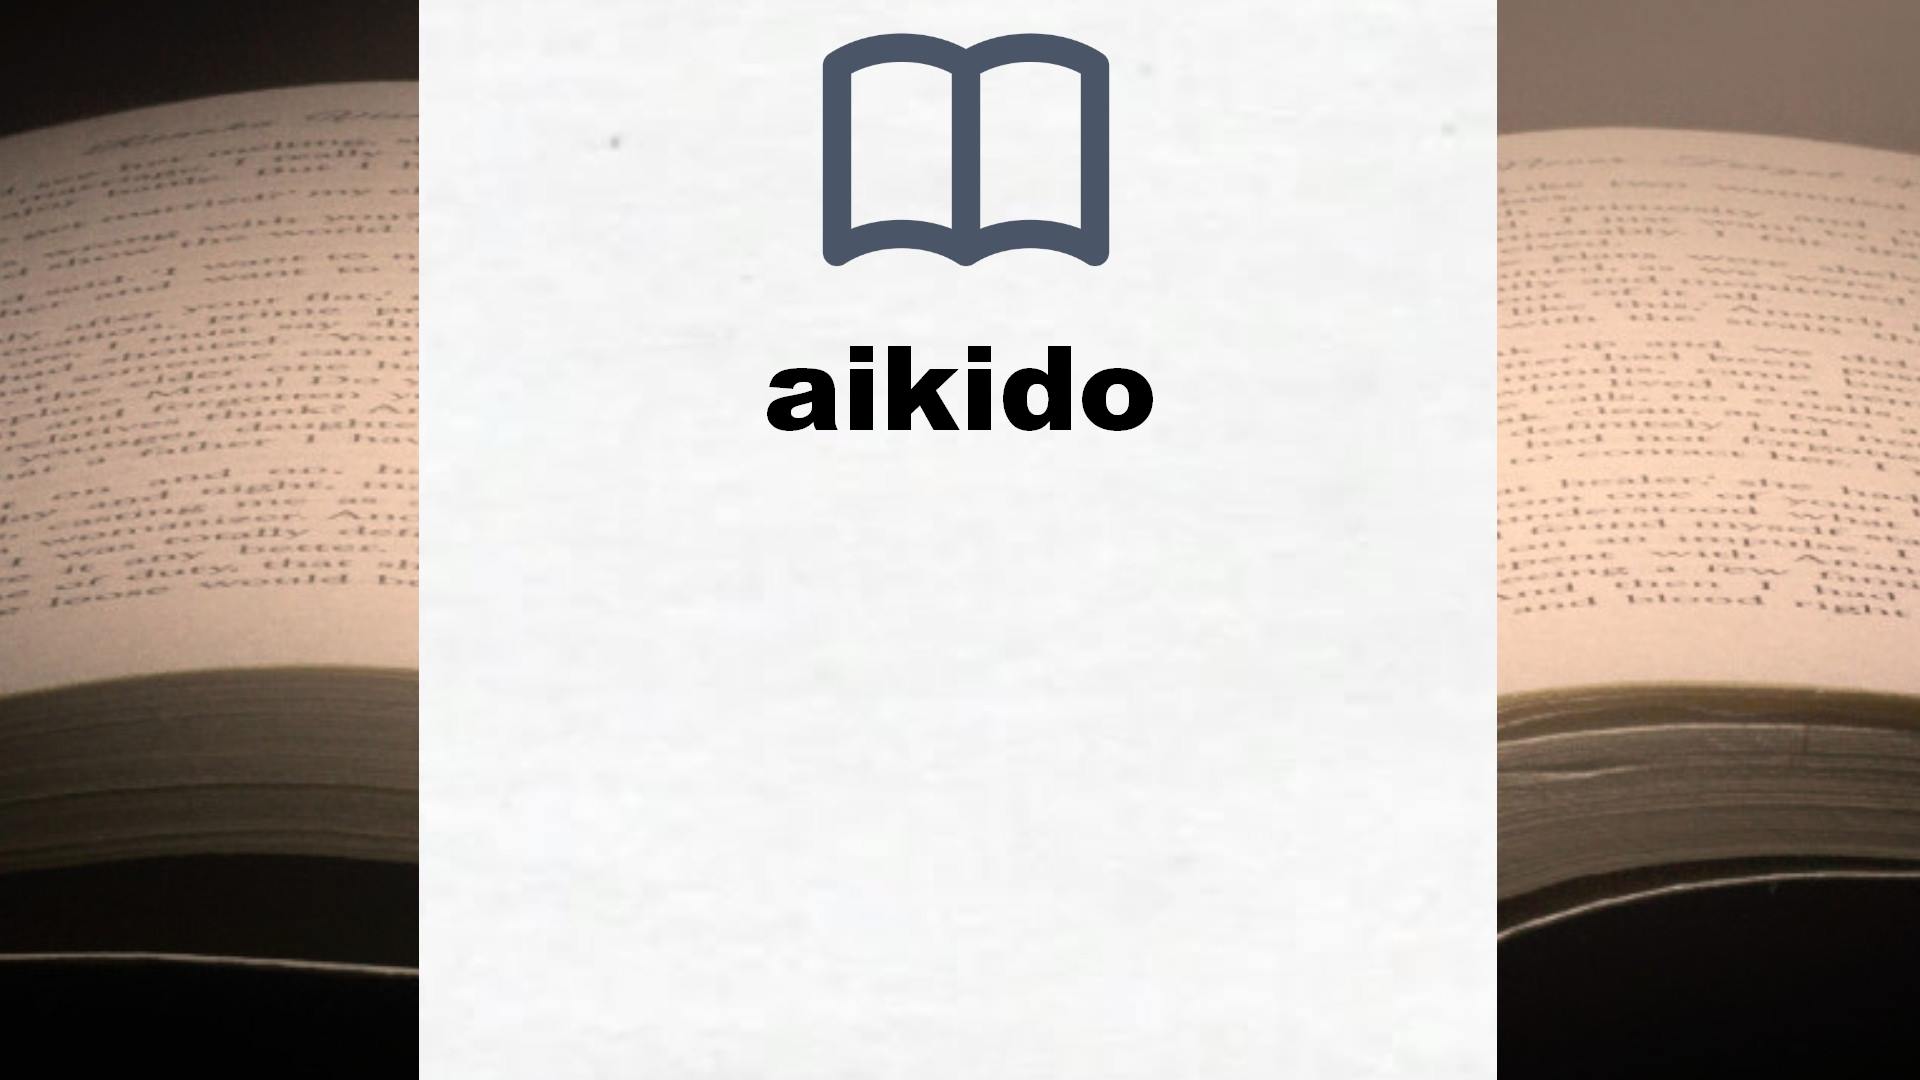 Libros sobre aikido